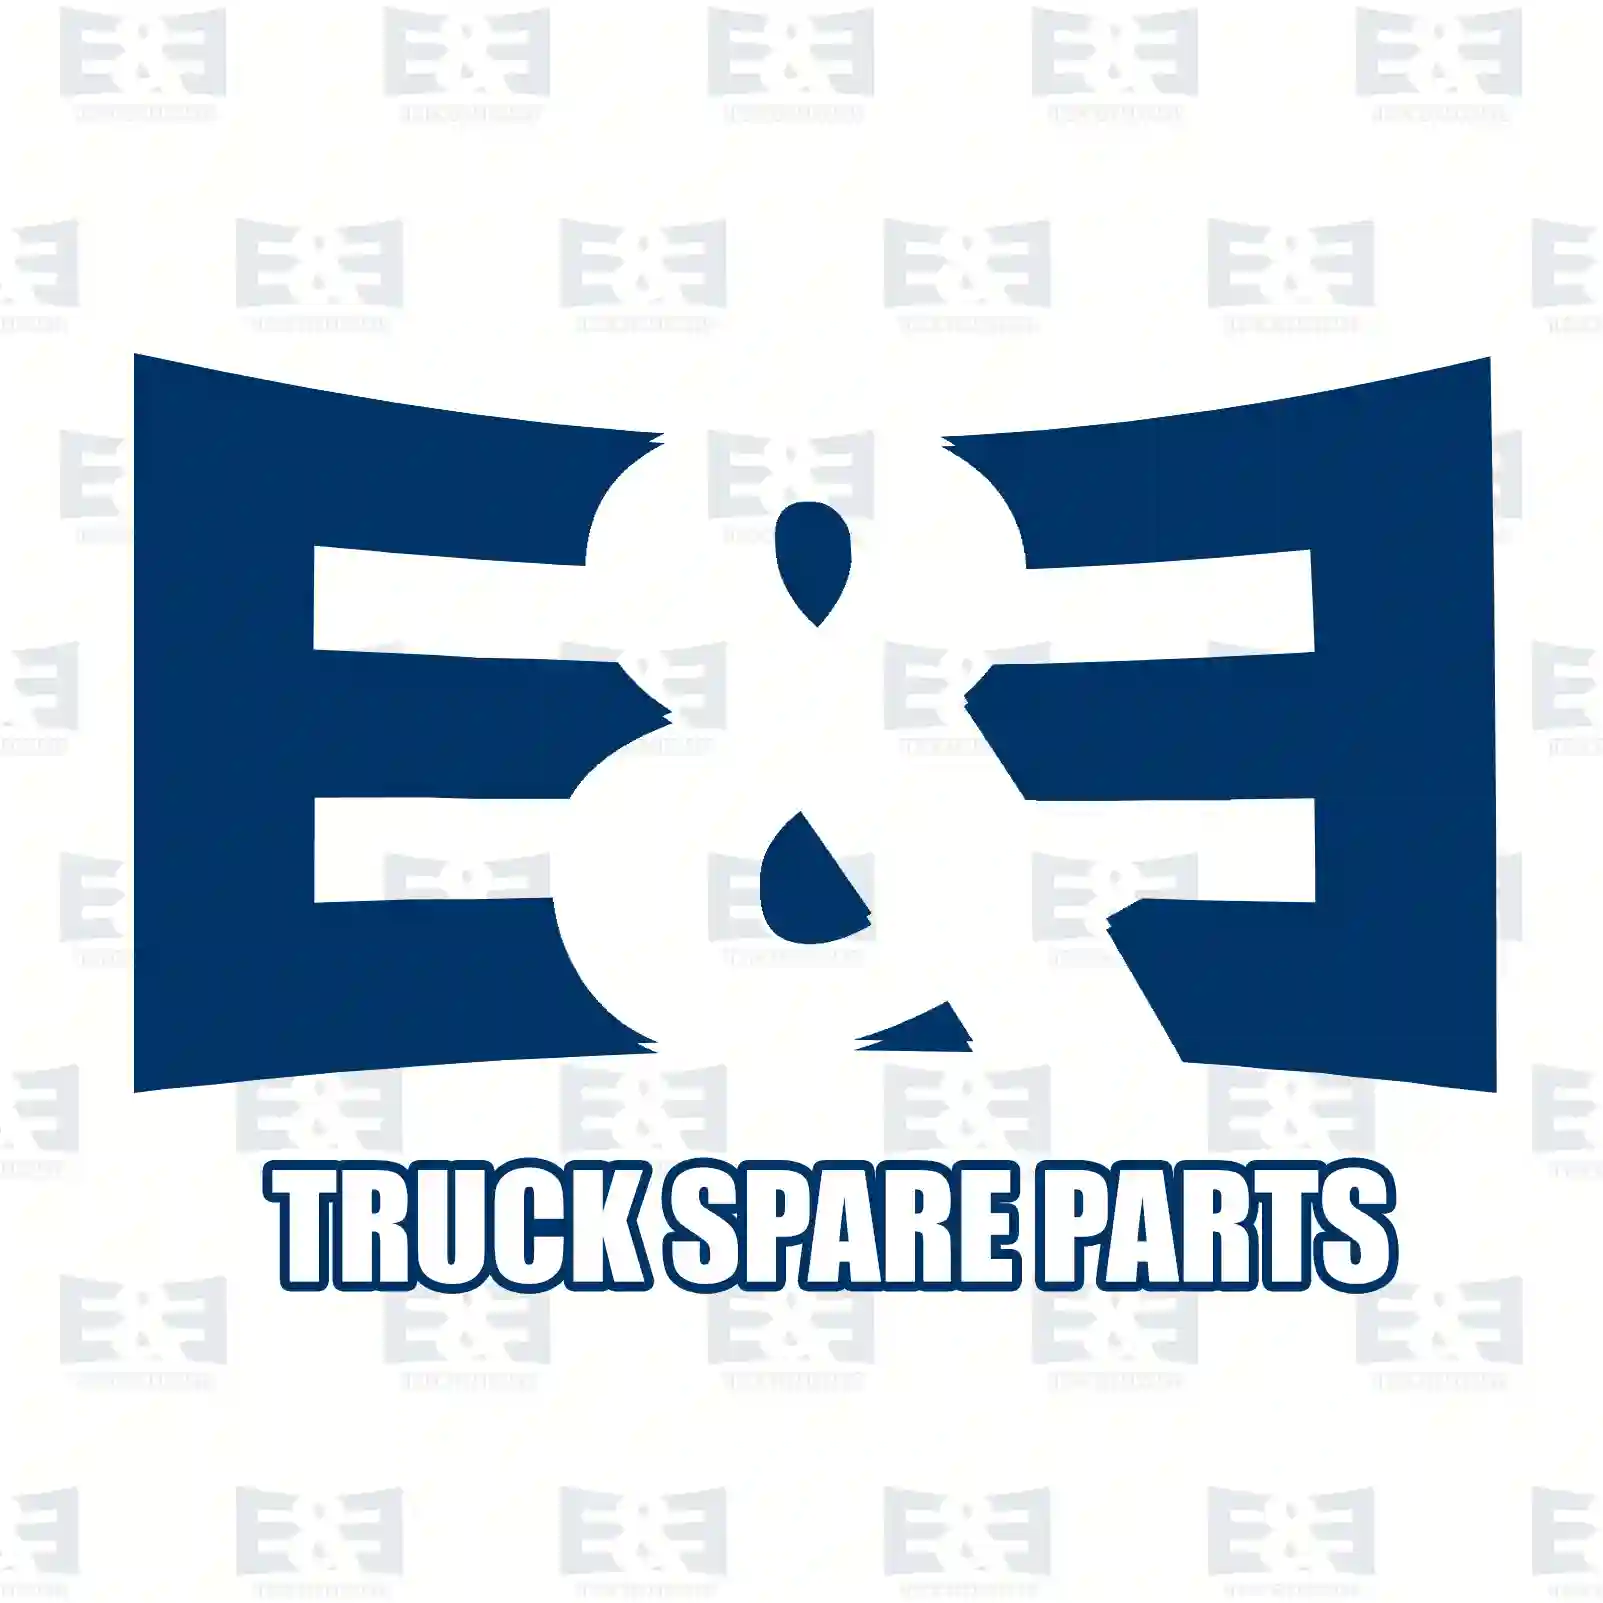 General overhaul kit, 2E2209397, 551386, ZG01368-0008 ||  2E2209397 E&E Truck Spare Parts | Truck Spare Parts, Auotomotive Spare Parts General overhaul kit, 2E2209397, 551386, ZG01368-0008 ||  2E2209397 E&E Truck Spare Parts | Truck Spare Parts, Auotomotive Spare Parts